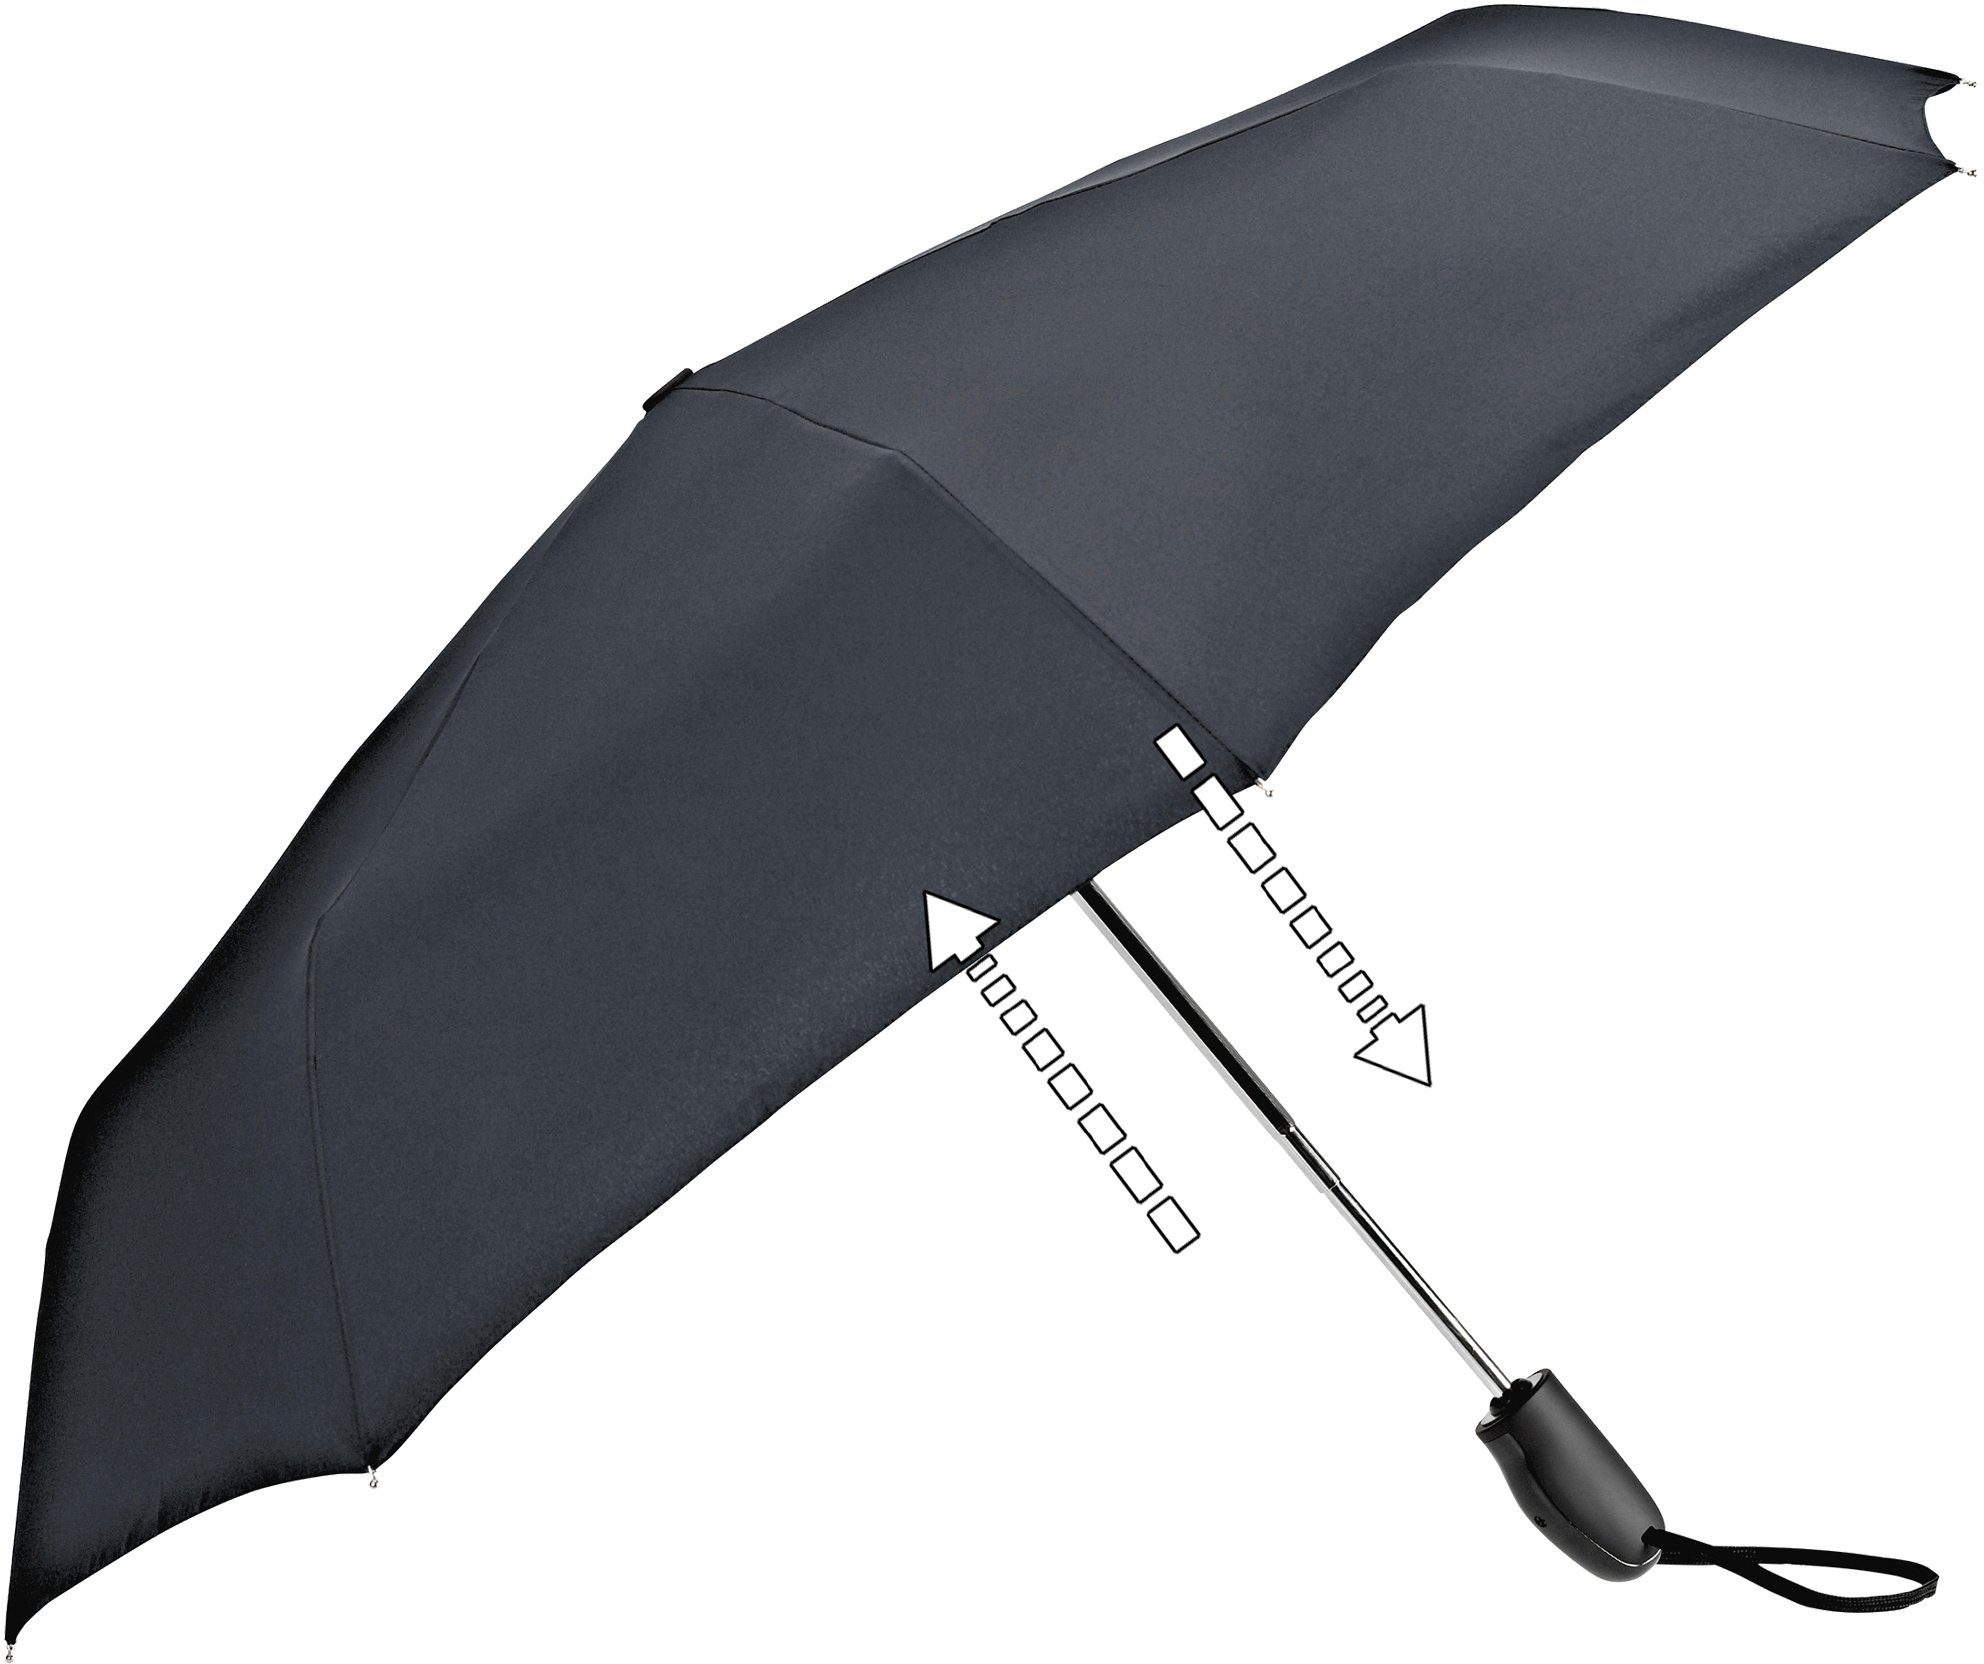 Taschenregenschirm Automatik EuroSCHIRM® 32S7, anthrazit